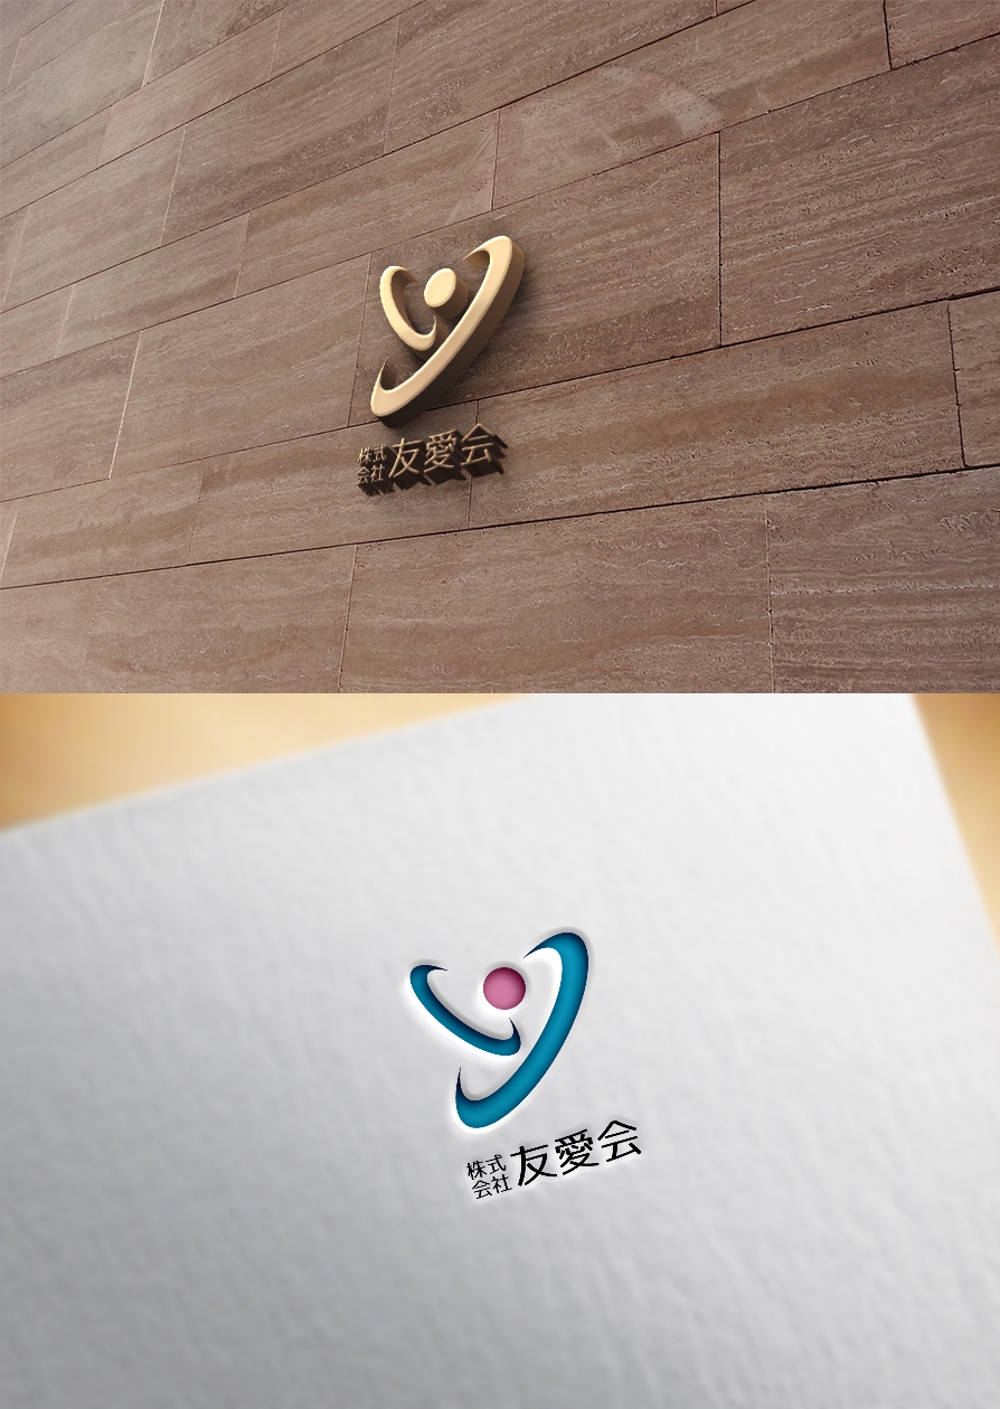 介護福祉事業の会社「株式会社友愛会」のロゴ